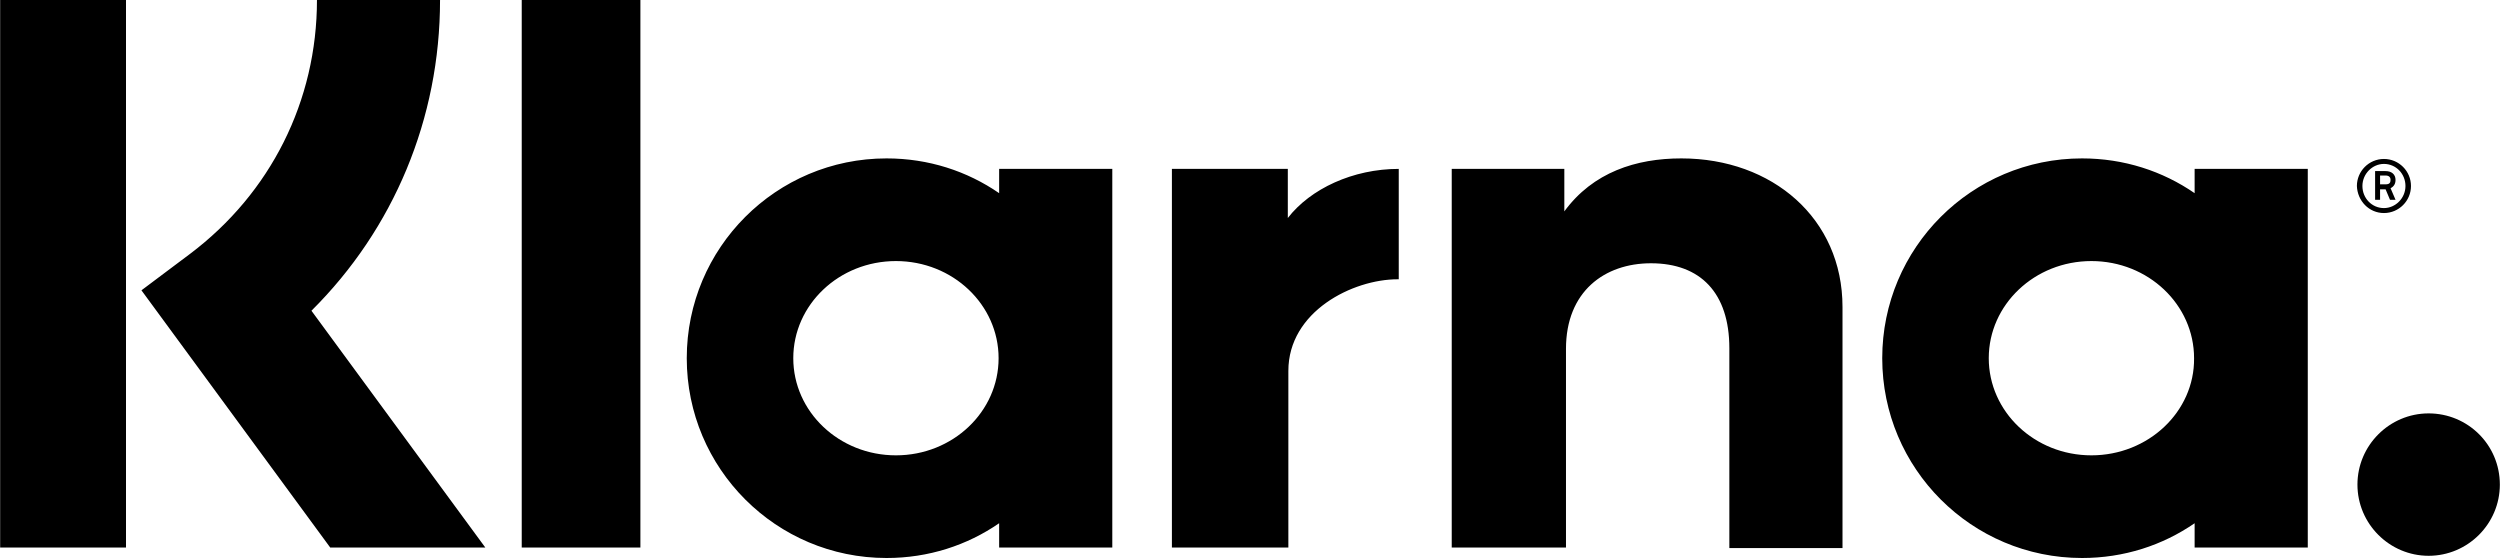 klarna-logo-black